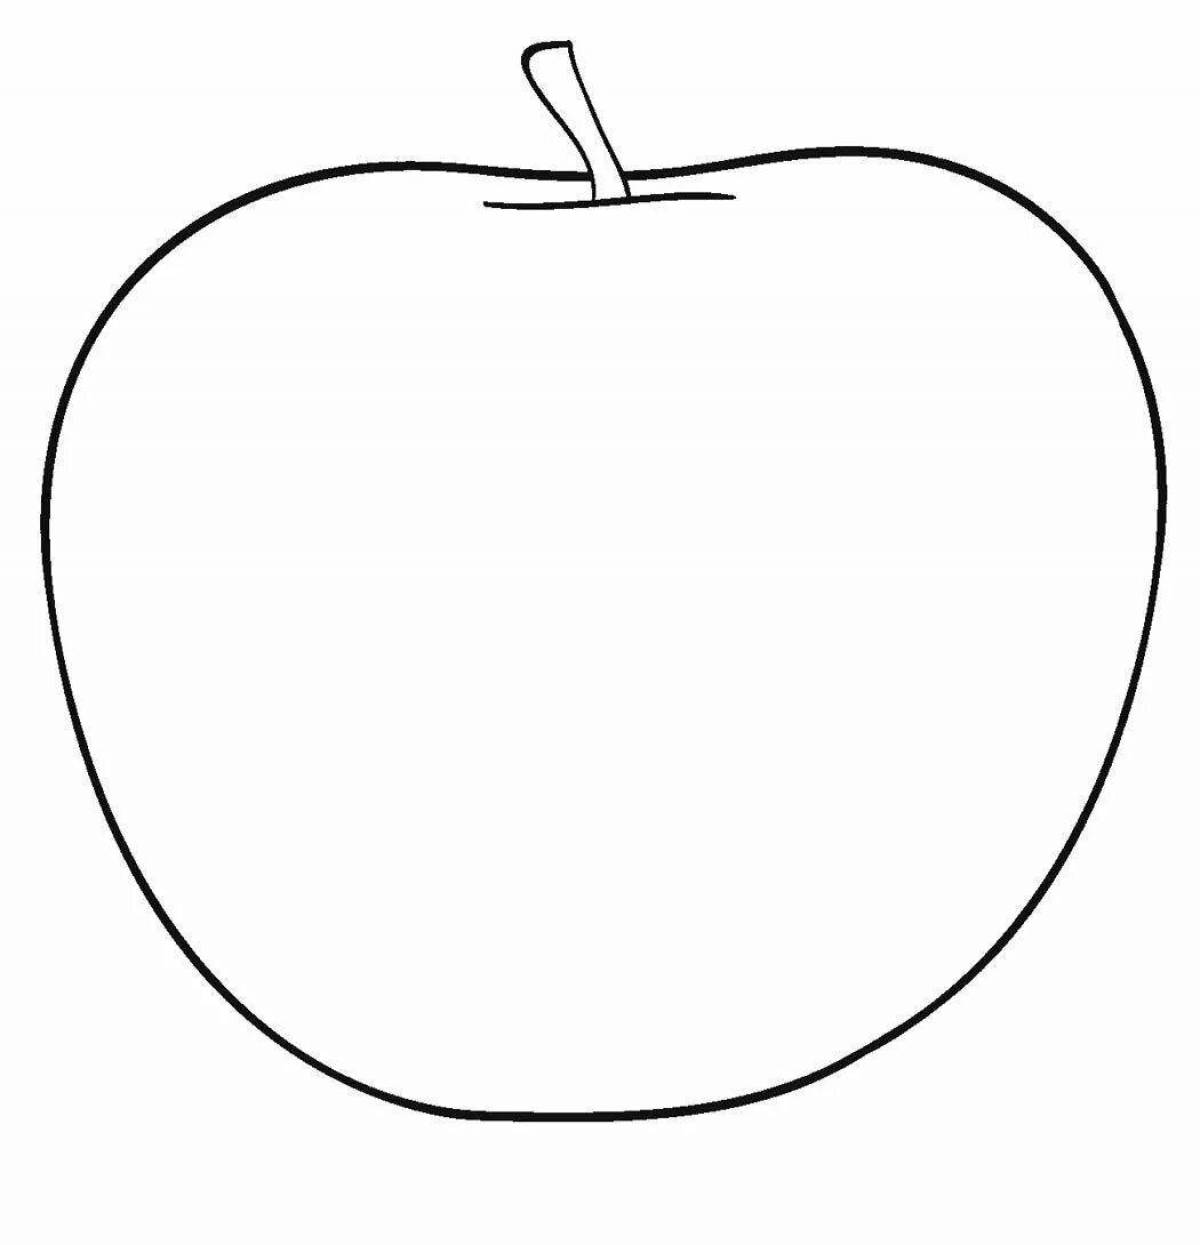 Beside an apple on a plate